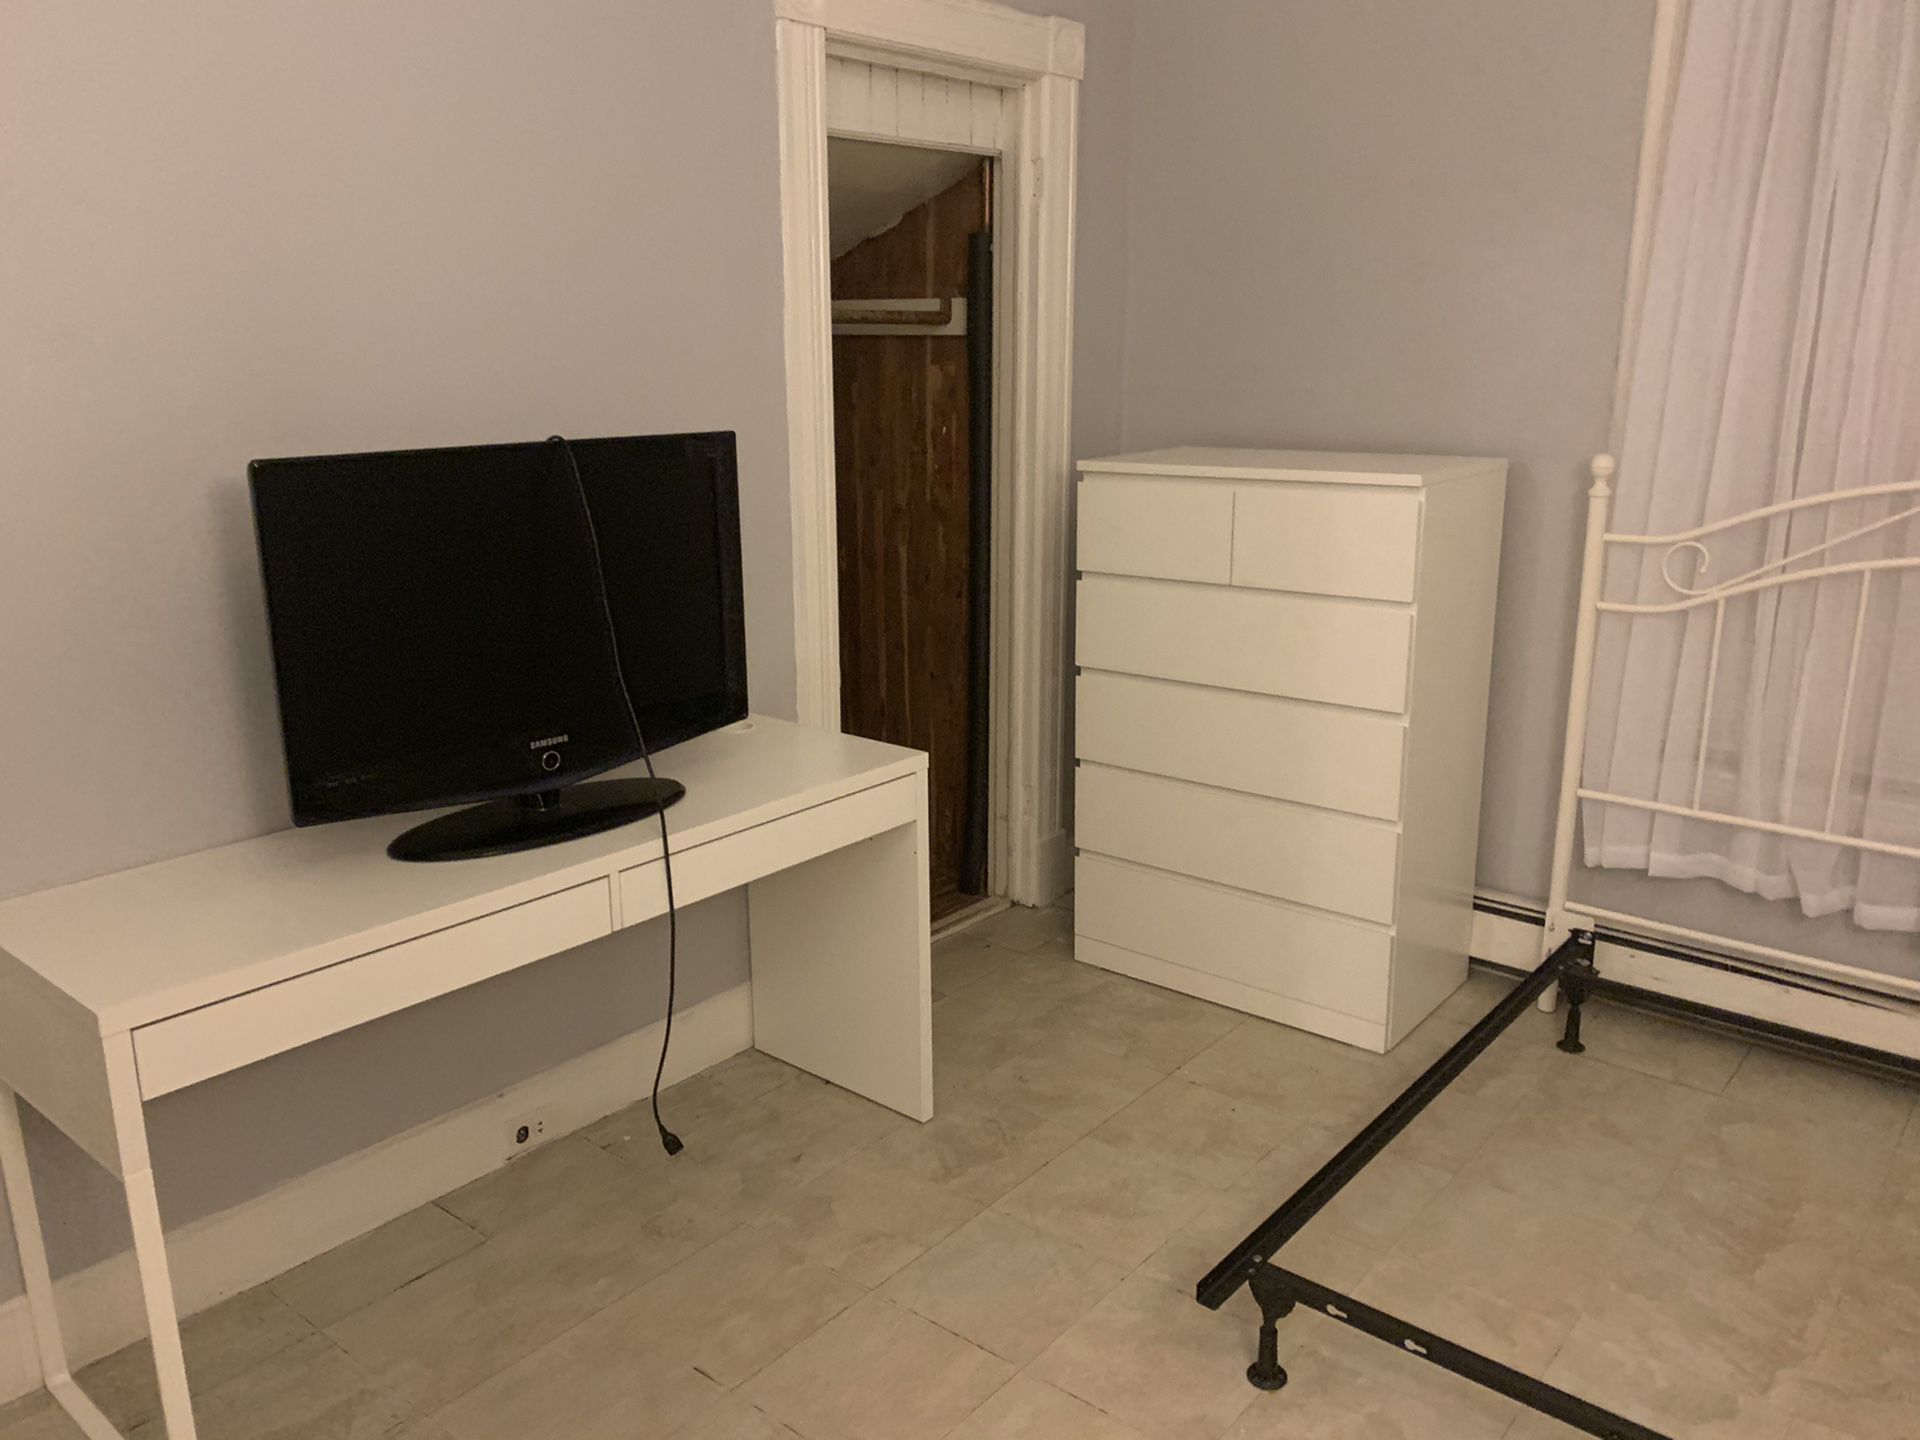 Tv, bed frame, dresser n desk